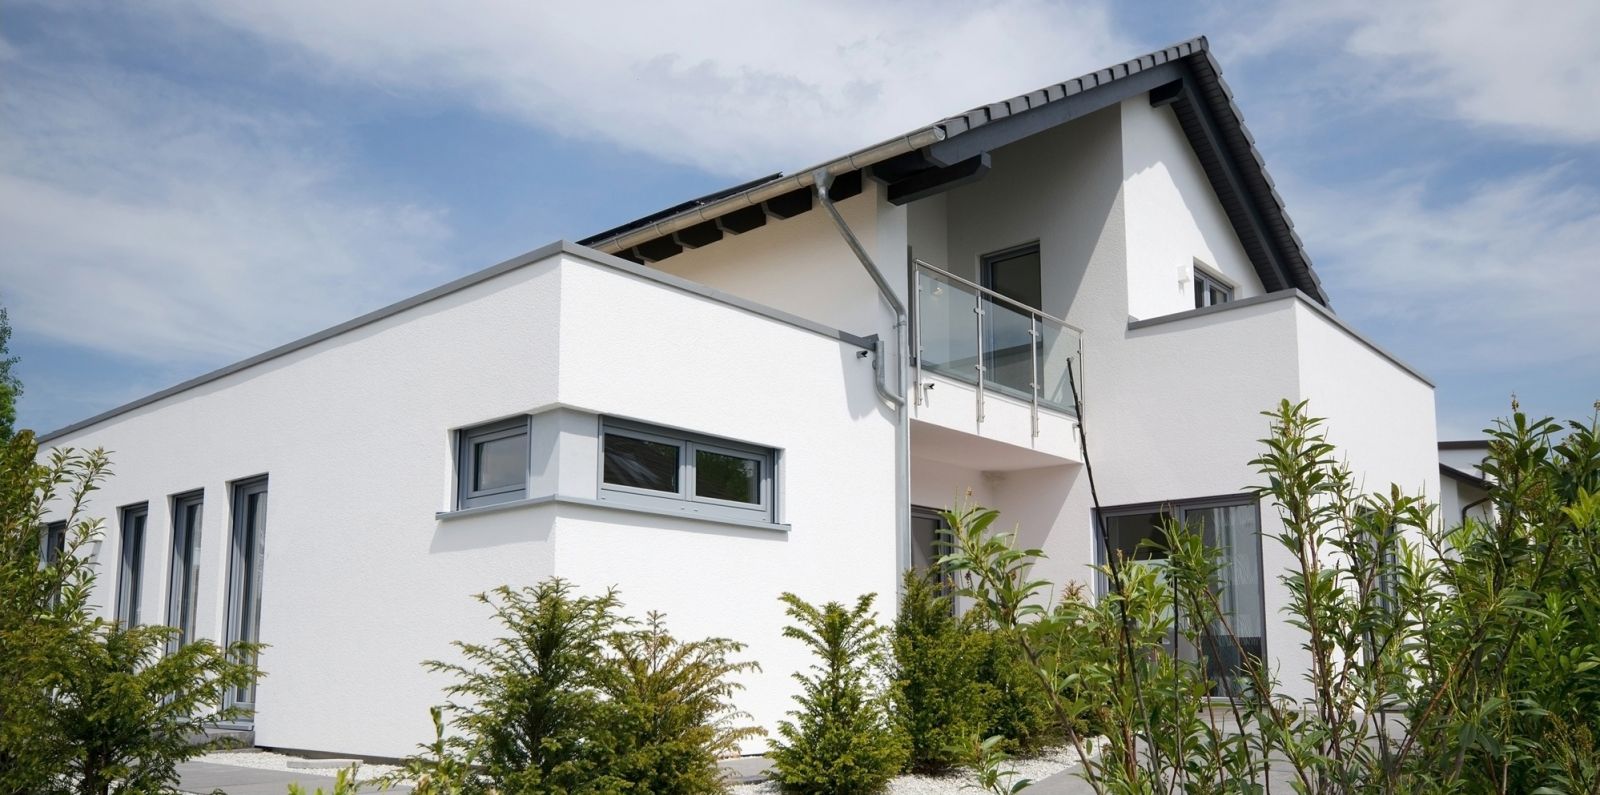 Haus mit Immobilienmakler verkaufen Wuppertal!